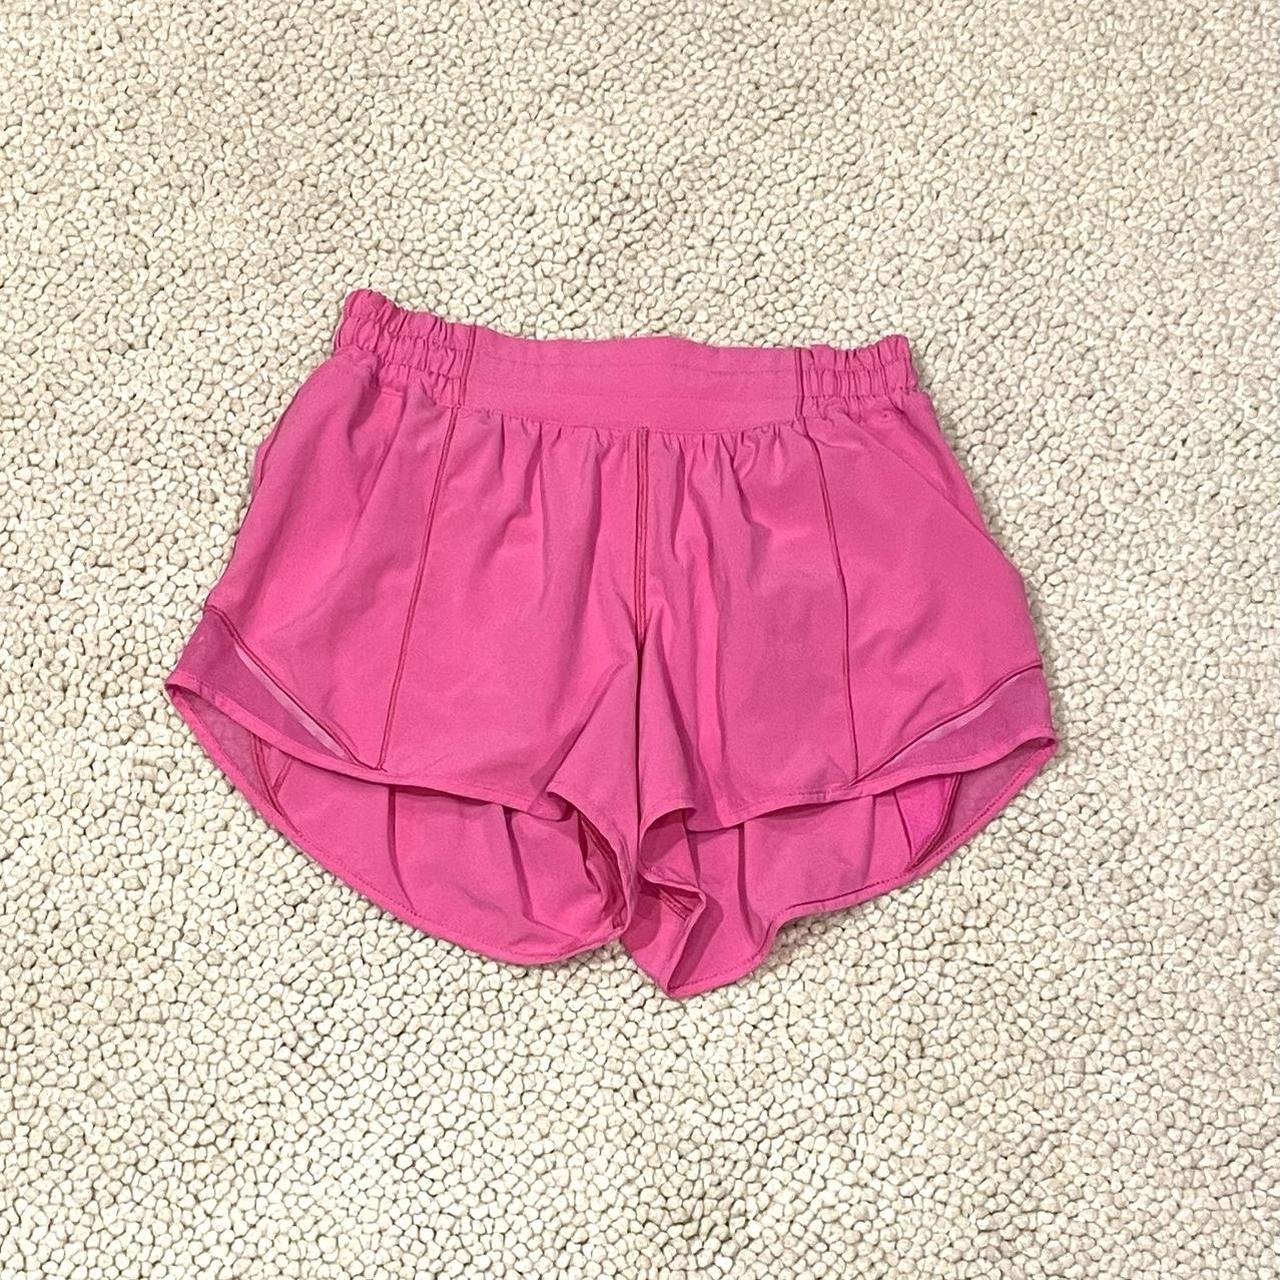 Lululemon Hotty hot shorts sonic pink. The shorts